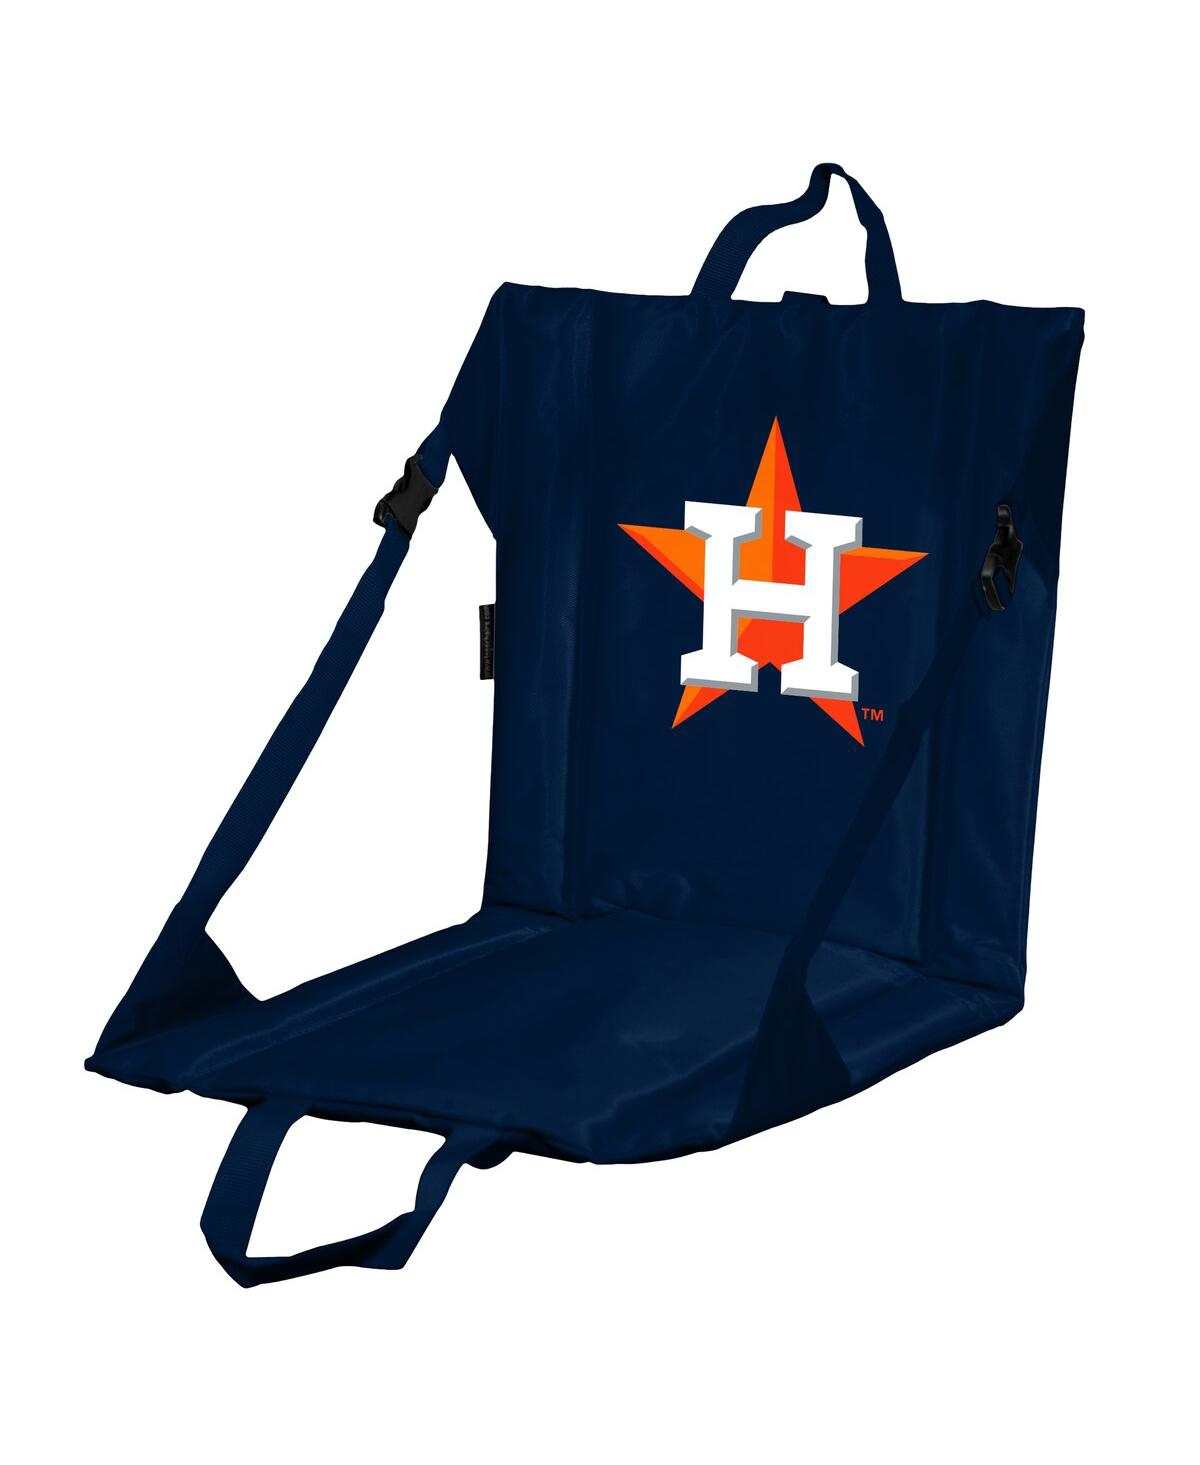 Houston Astros Logo Stadium Seat - Blue